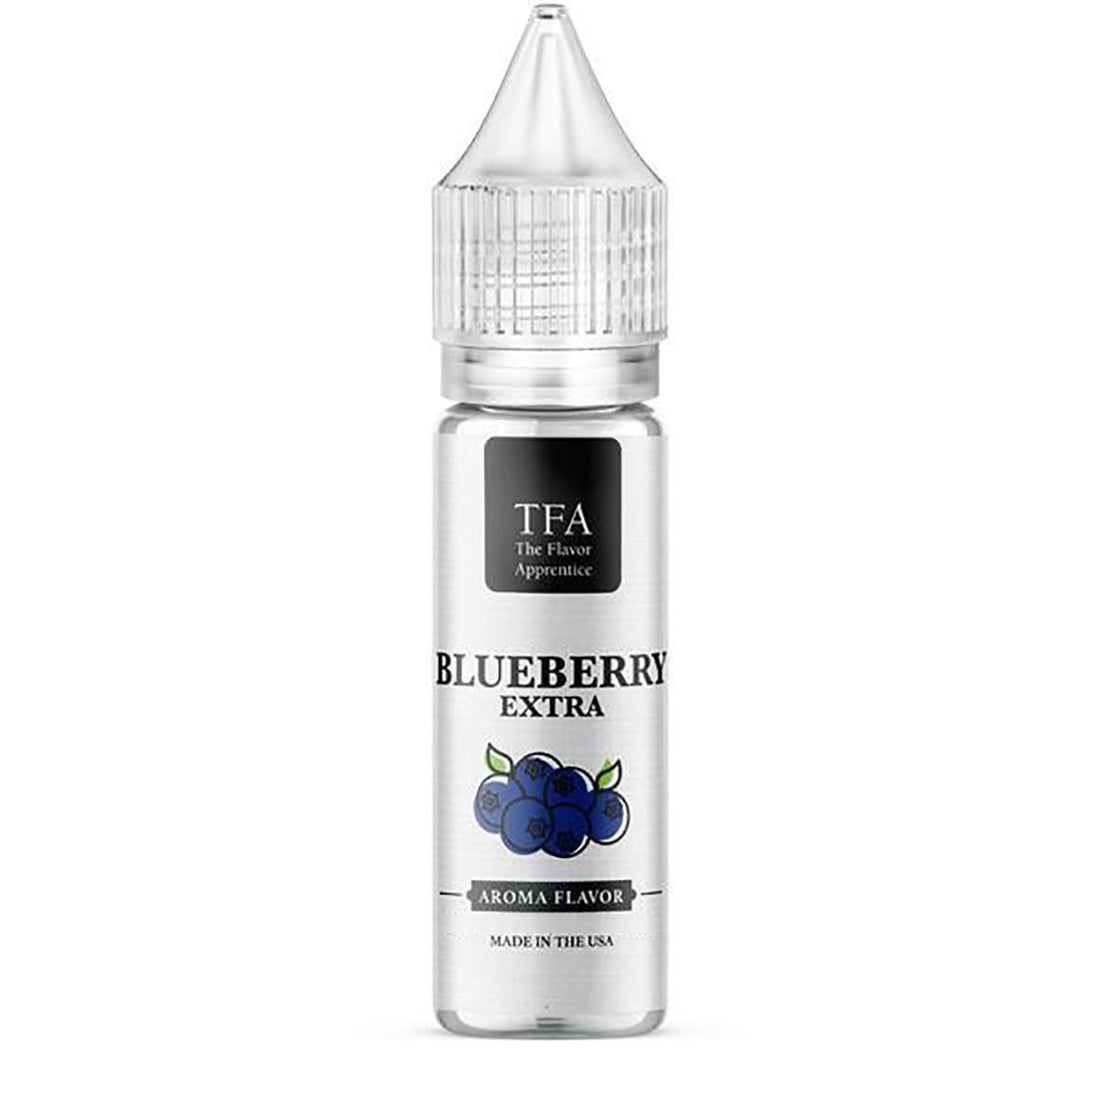 Blueberry (Extra) TFA - Aroma - TFA | AR-TFA-BLE